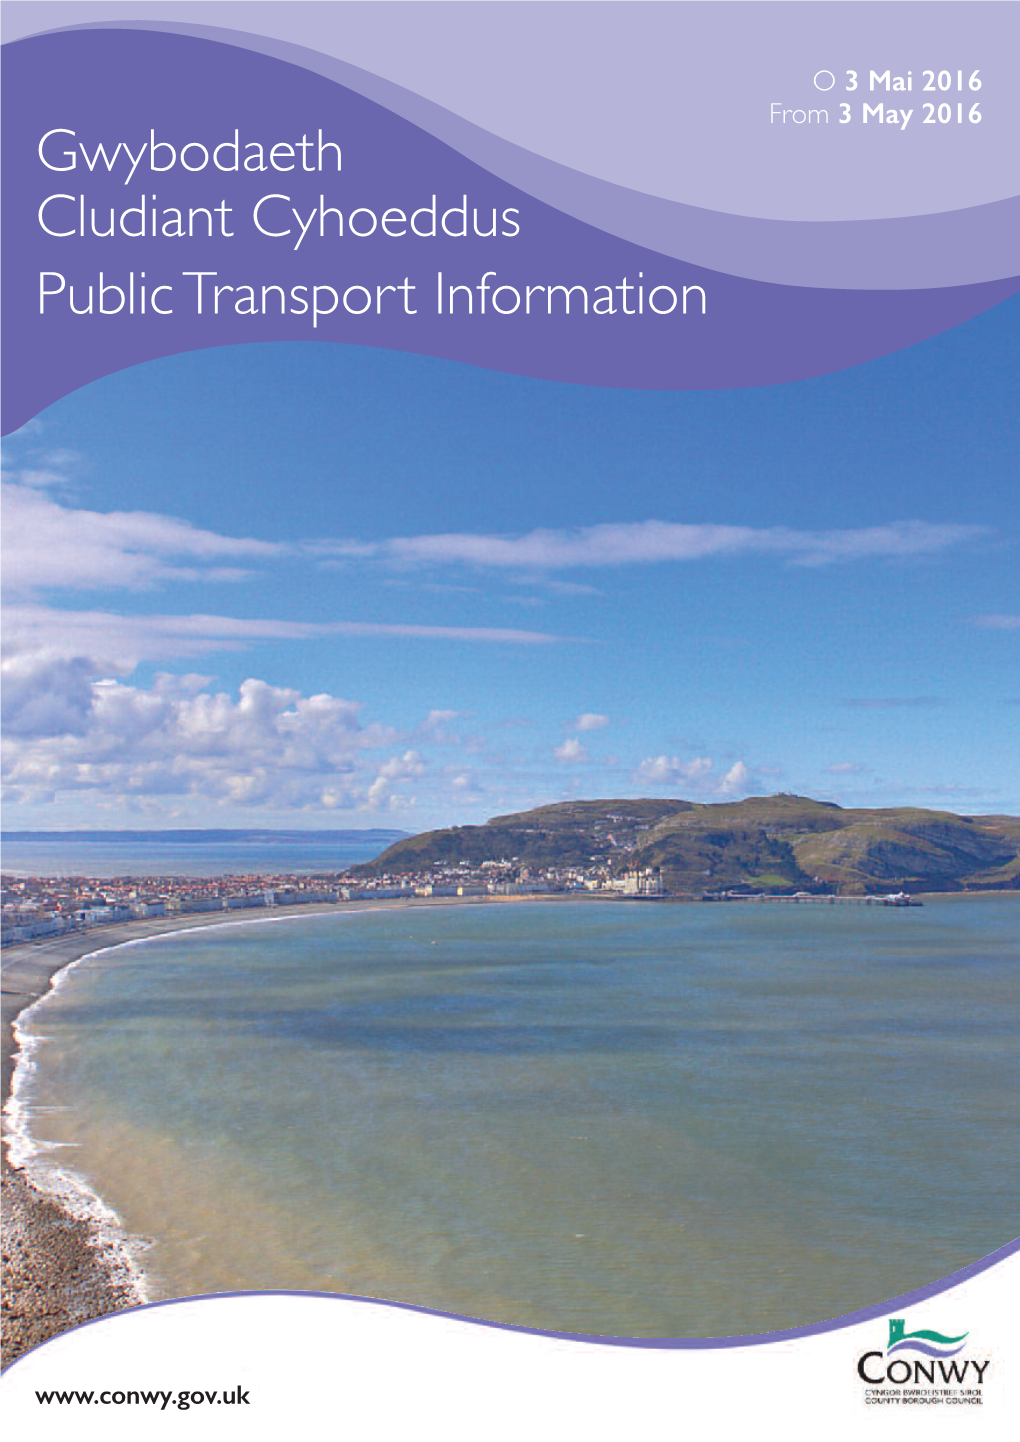 Gwybodaeth Cludiant Cyhoeddus Public Transport Information